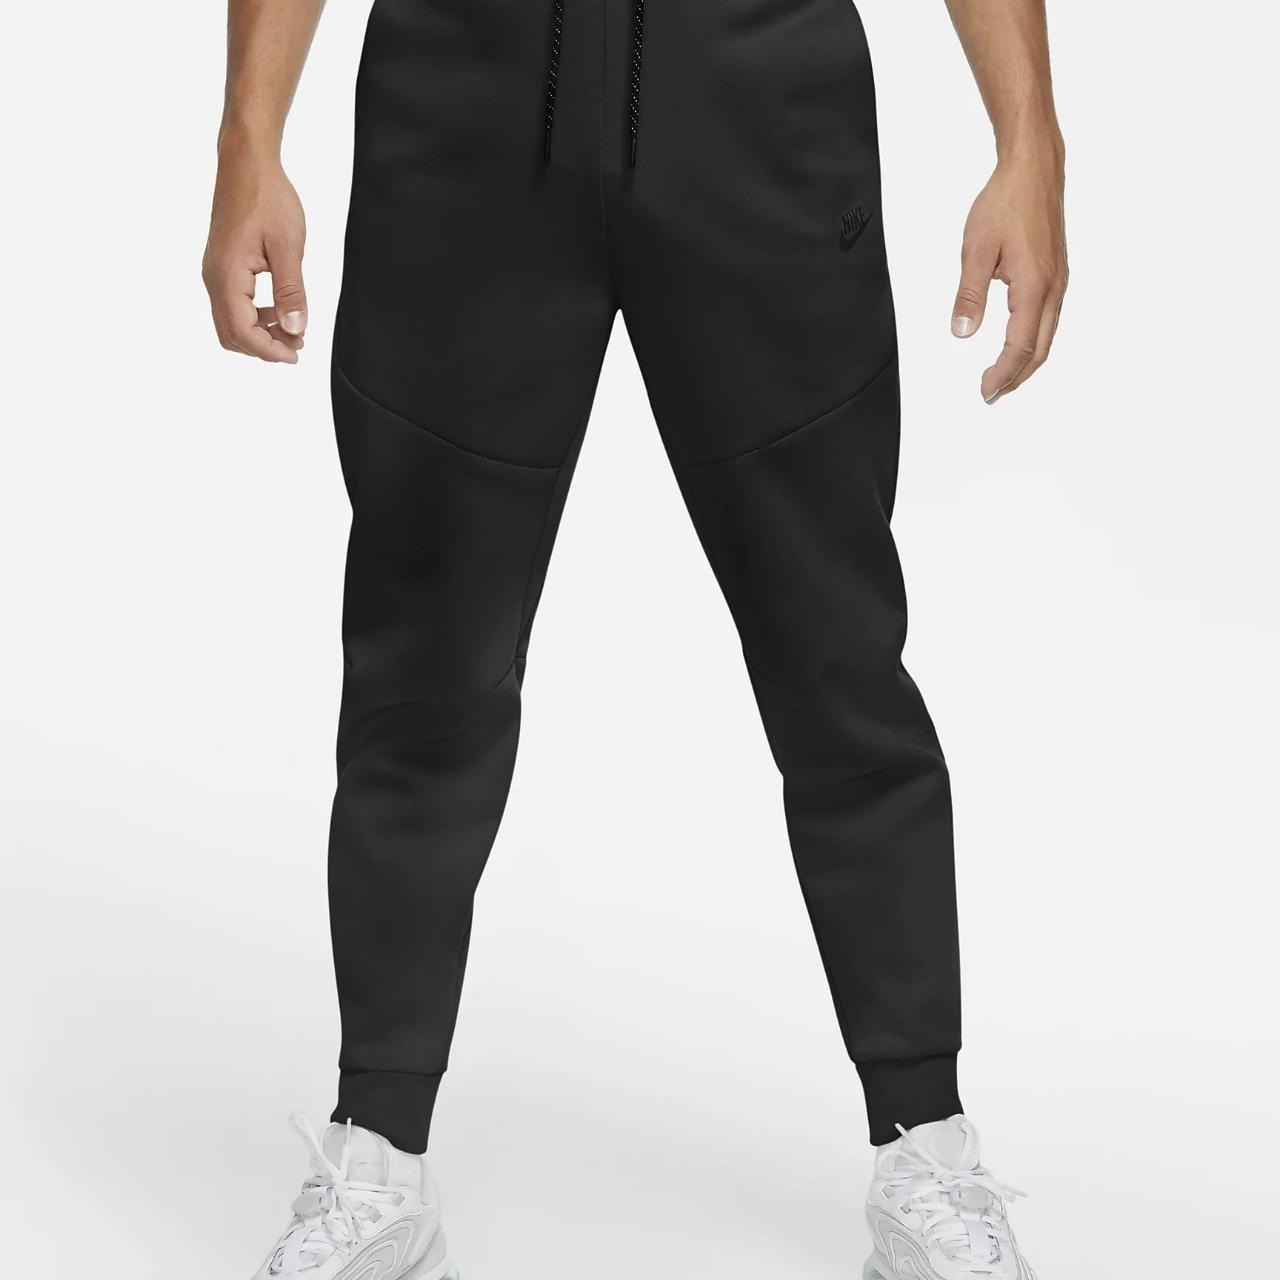 Nike Sportswear Tech Fleece Men's Joggers UK Size... - Depop